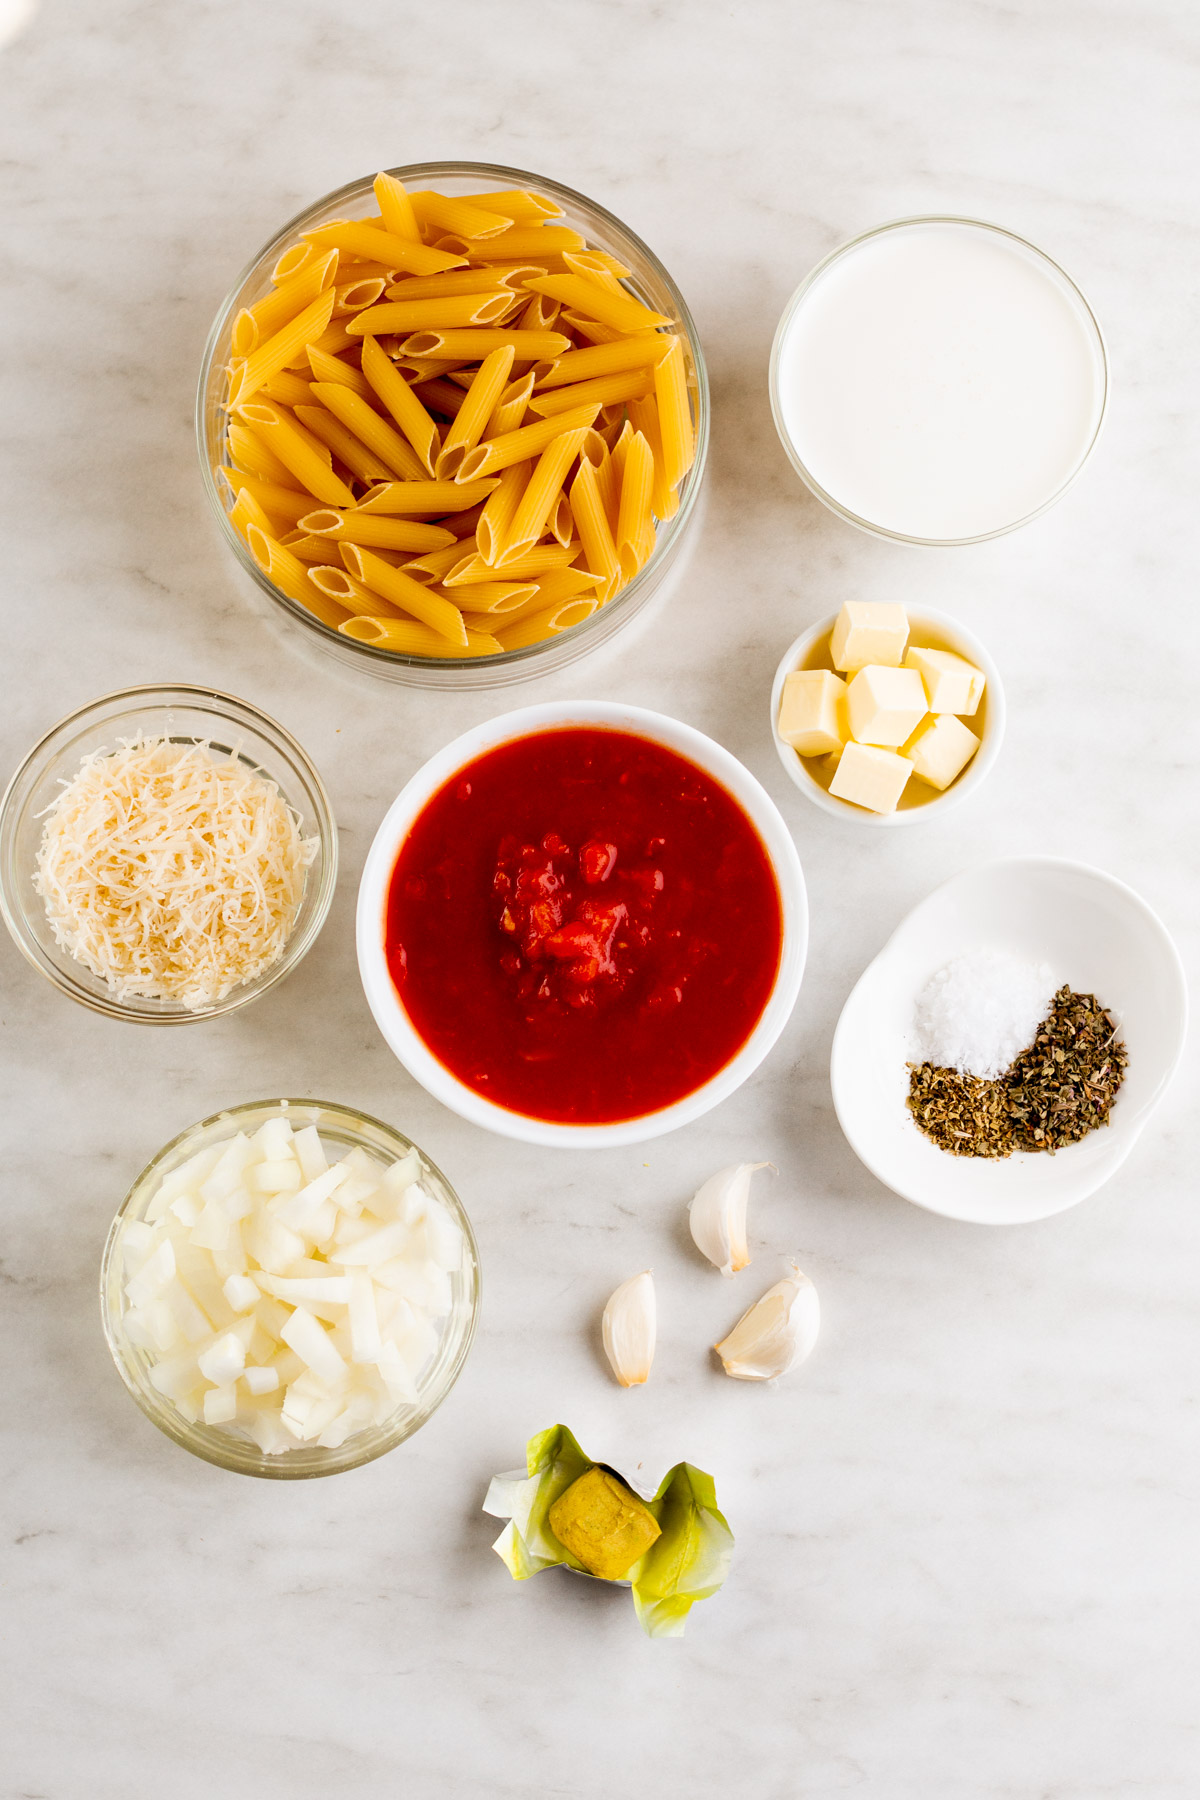 ingredients-to-make-homemade-pink-sauce-pasta